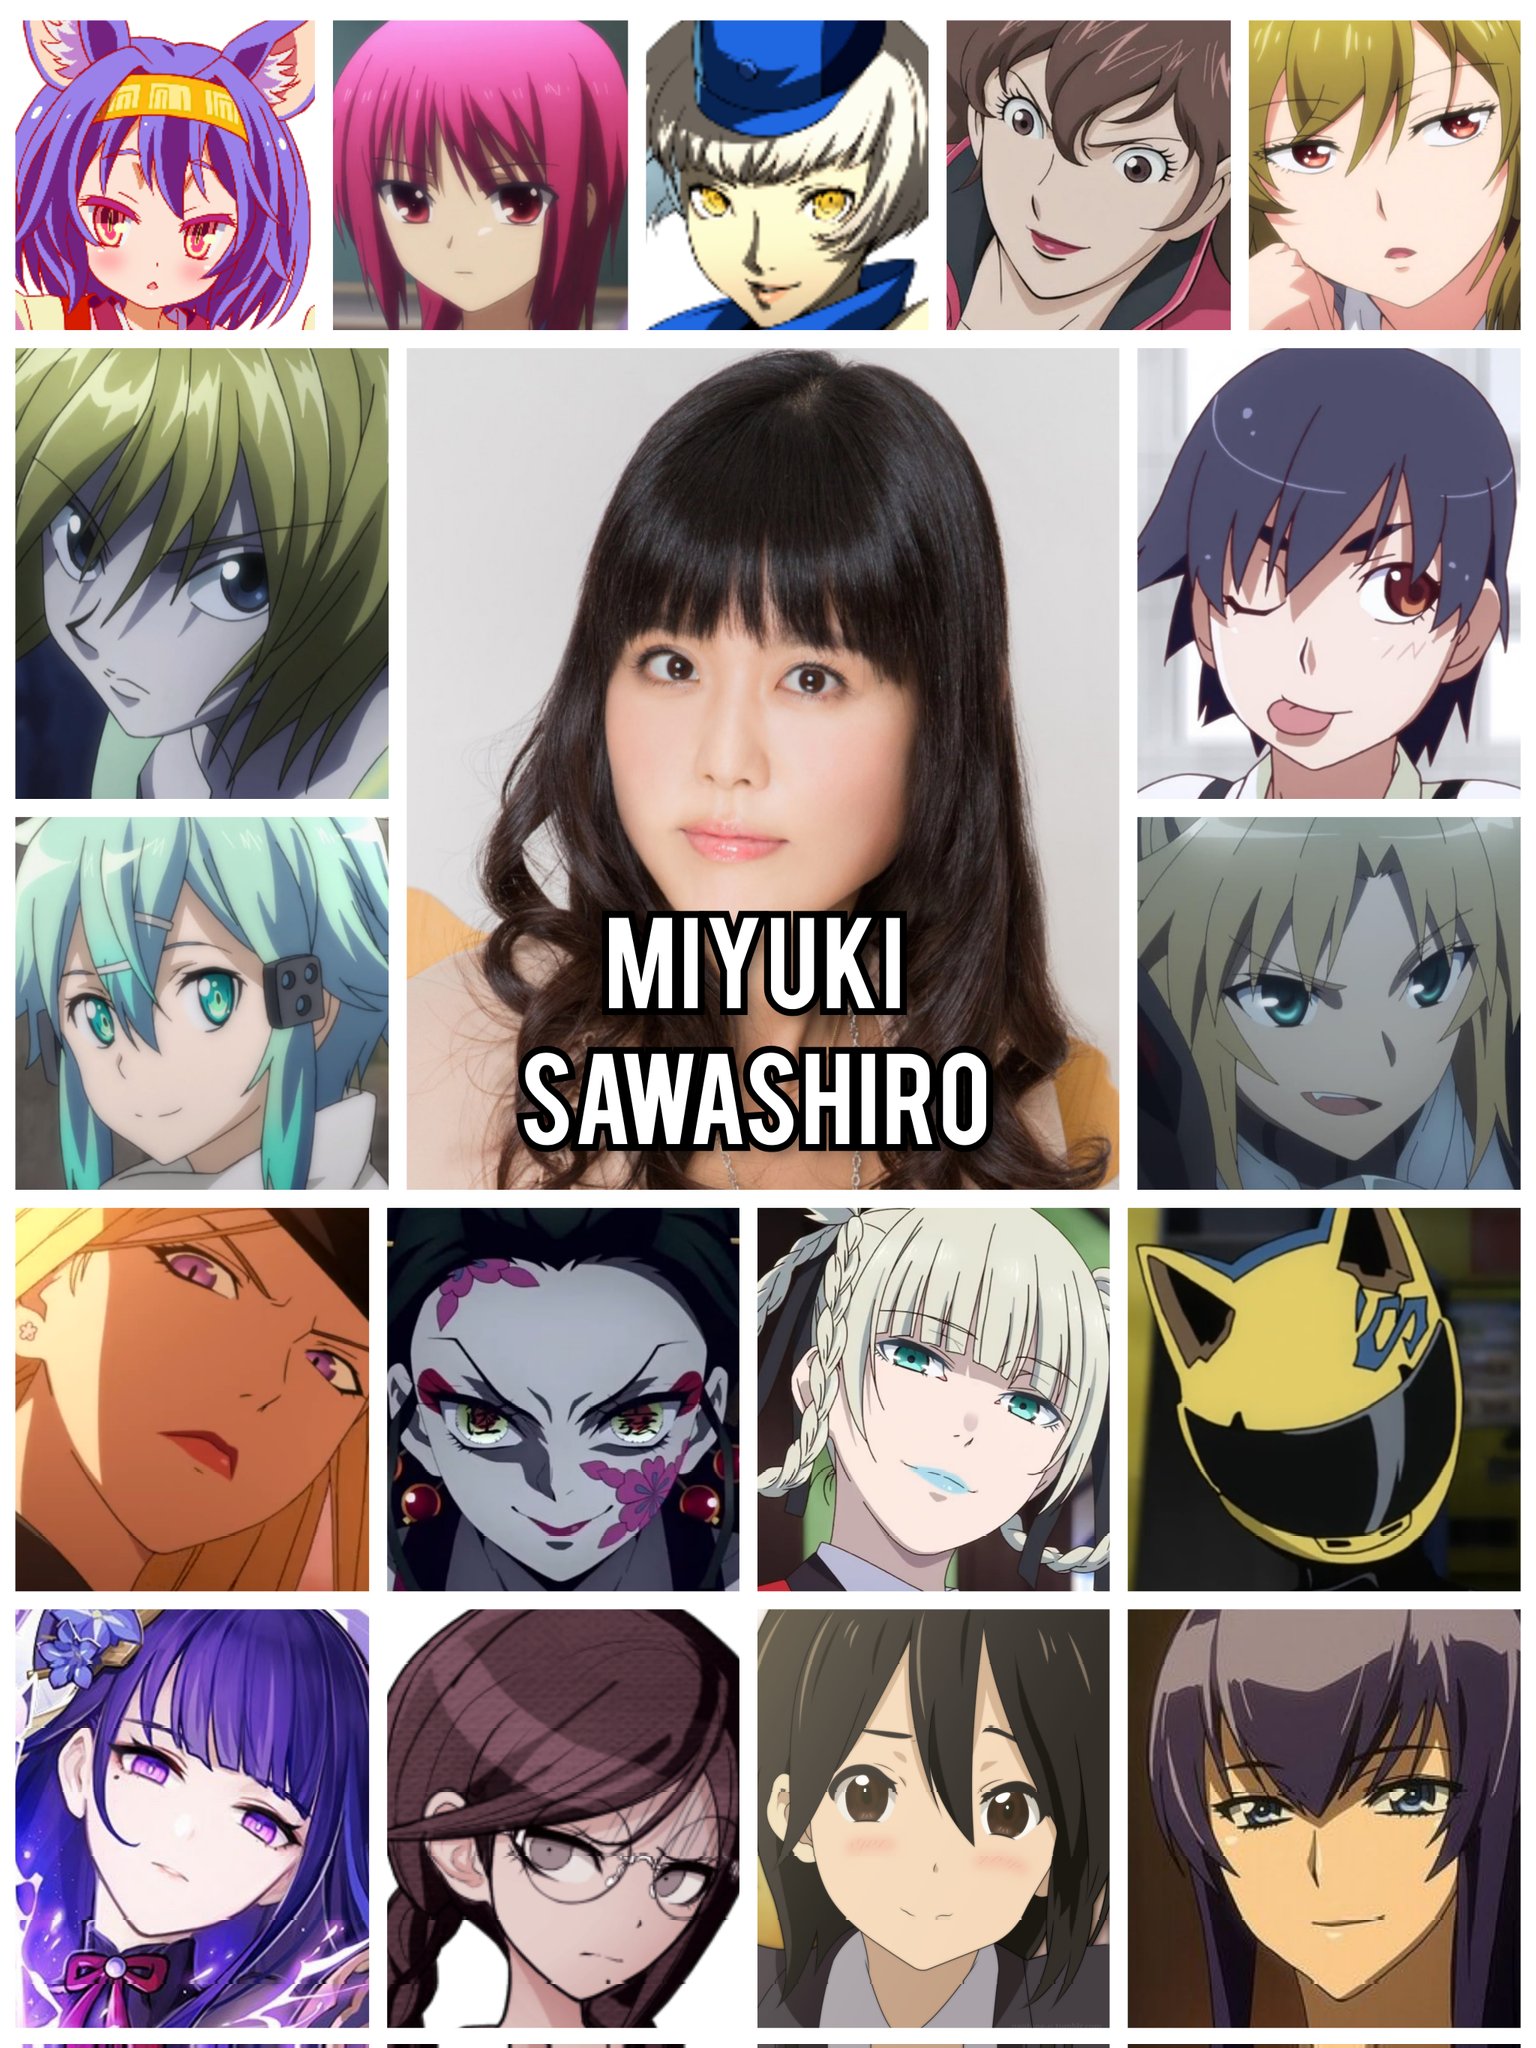 Personagens Com os Mesmos Dubladores! on X: A verdatilidade dessa mulher,  mano, é inacreditável! Algumas das personagens (e O personagem) da seiyuu  Miyuki Sawashiro!🇯🇵 Miyuki é conhecida por dublar o Kurapika de